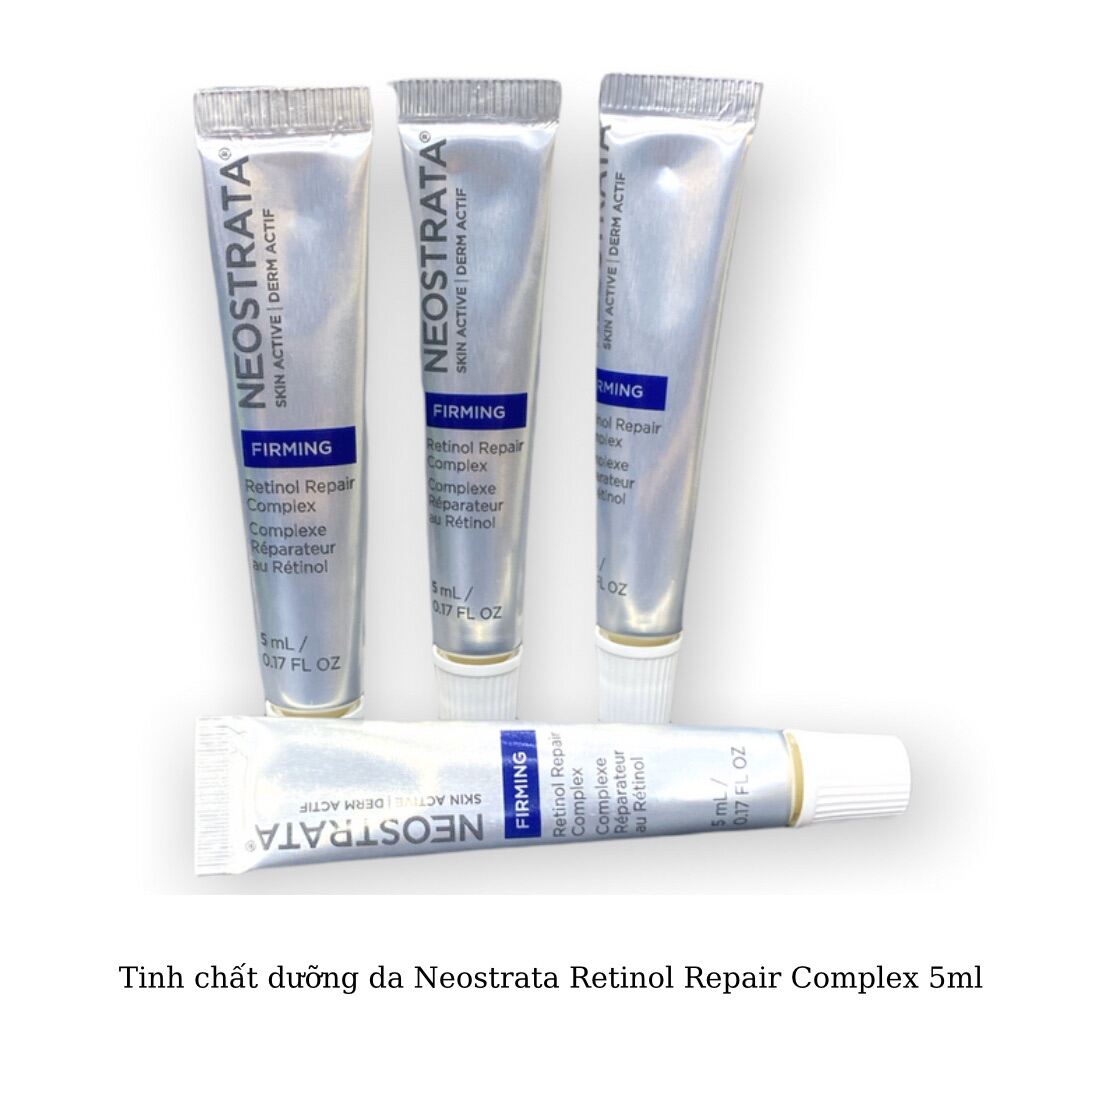 serum chống lão hoá Neostrata Retinol Repair Complex Mini 5ml thumbnail